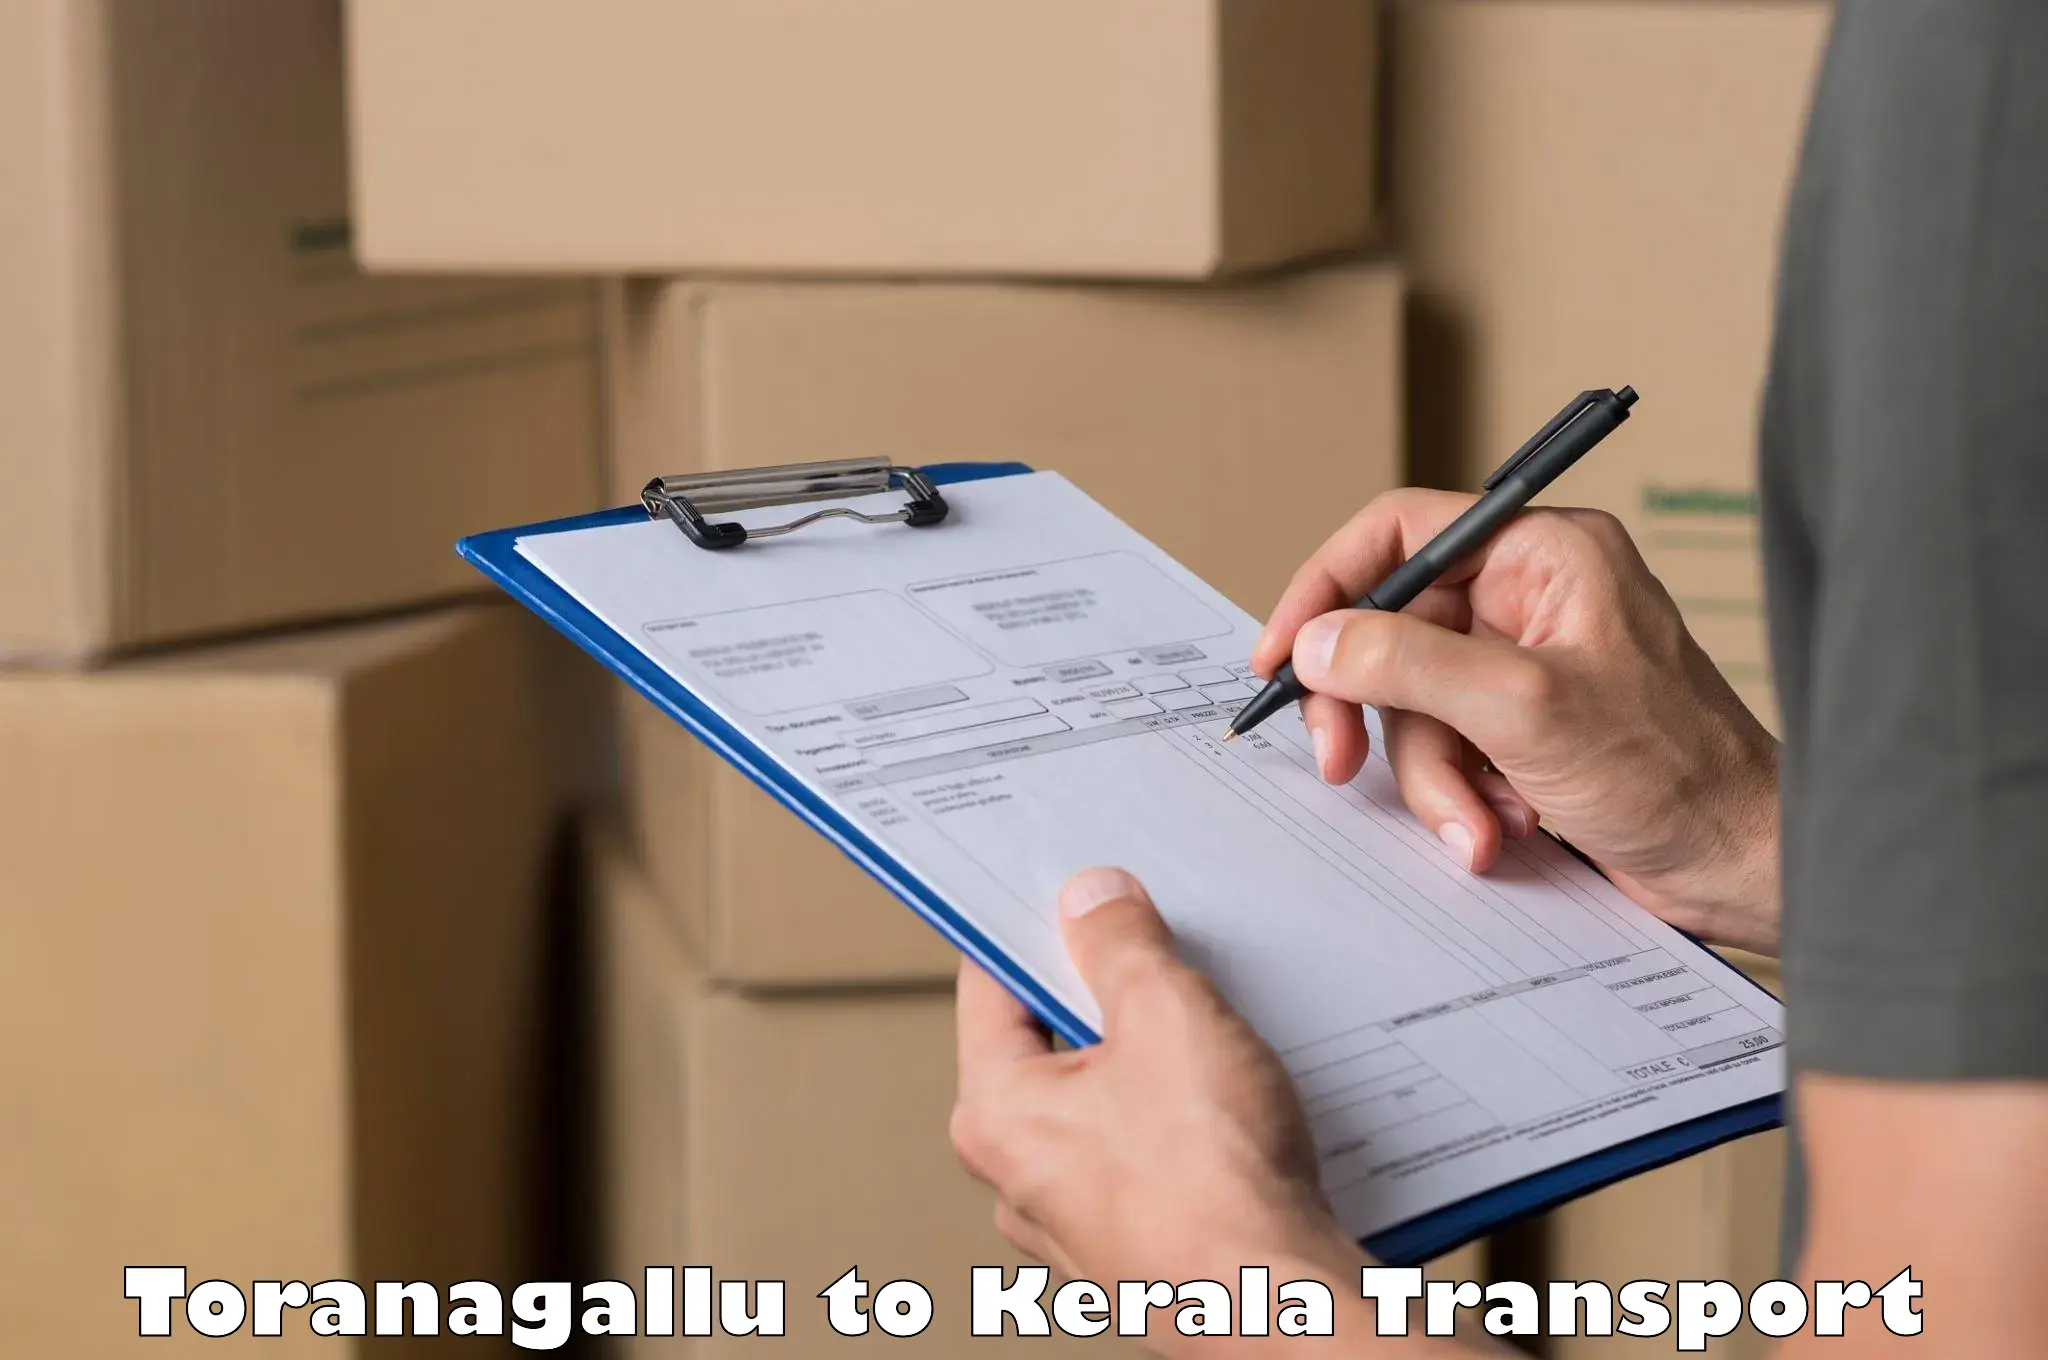 Commercial transport service Toranagallu to Pallikkara